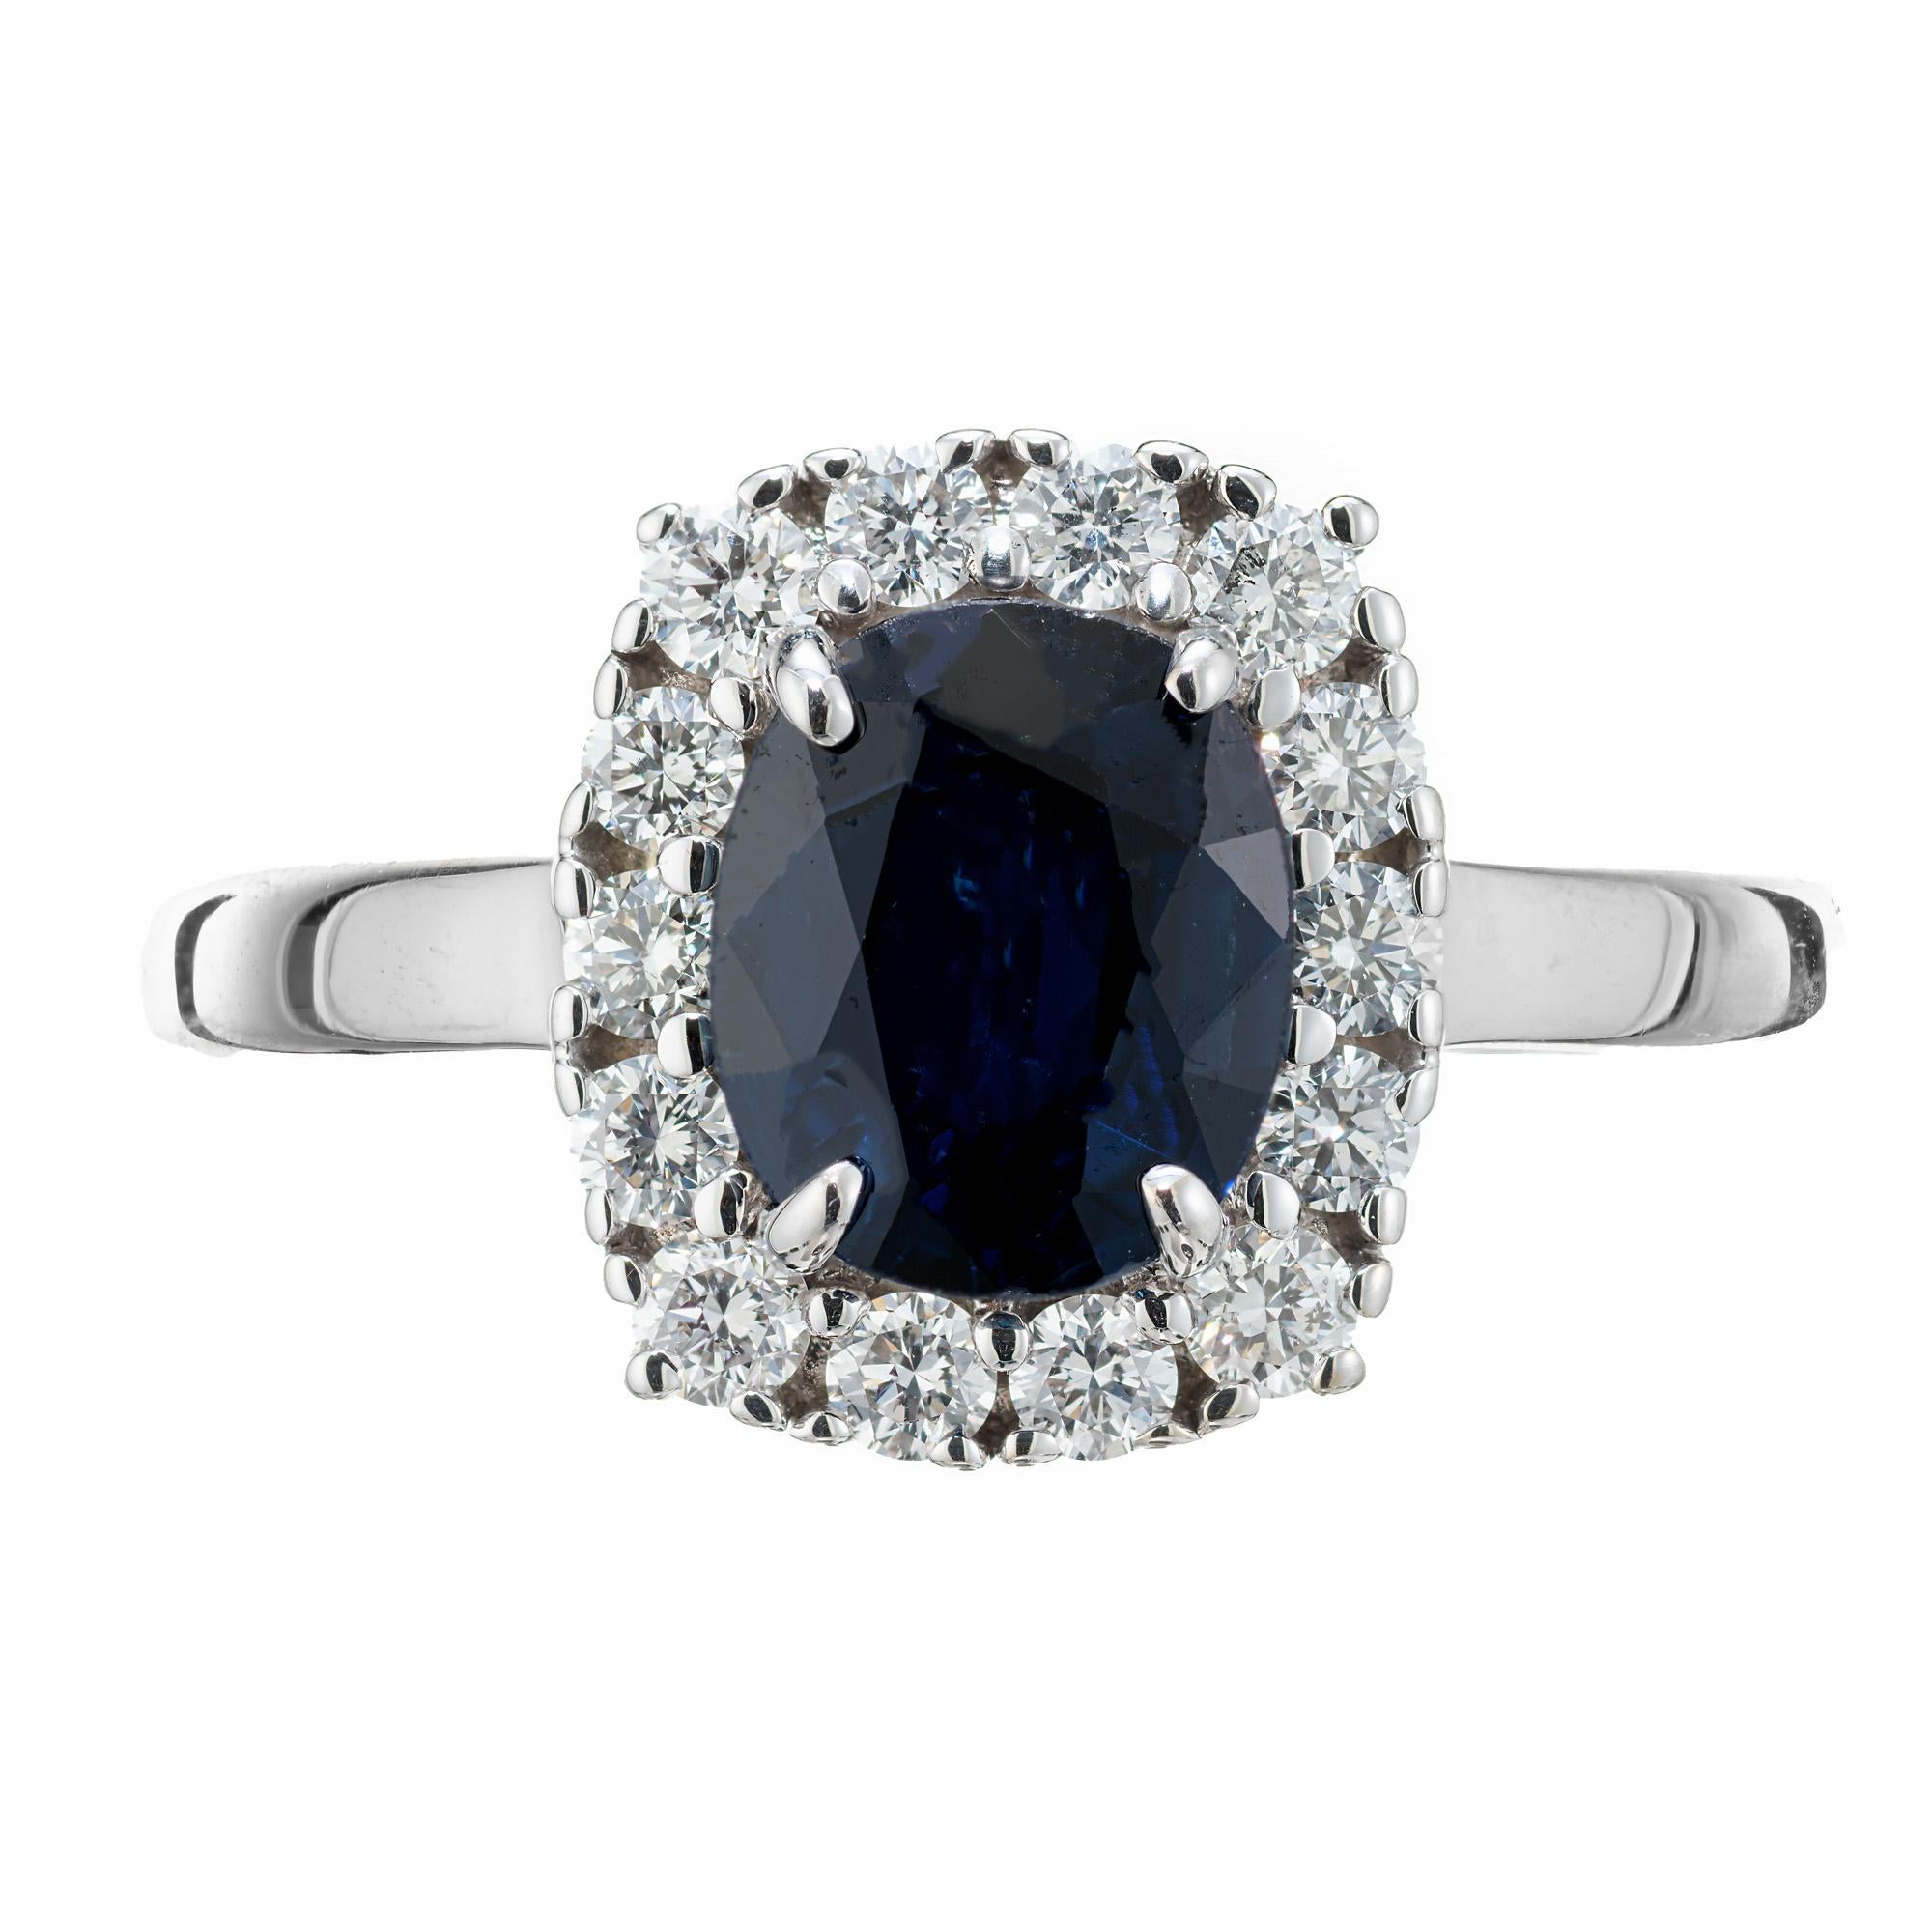 Blauer ovaler Saphir-Diamant-Verlobungsring. Dieser GIA-zertifizierte natürliche, nicht erhitzte, ovale, tiefblaue Saphir von 0,90 ct. ist mit einem Halo aus 14 runden, nahezu farblosen Diamanten im Brillantschliff in einer 14-karätigen